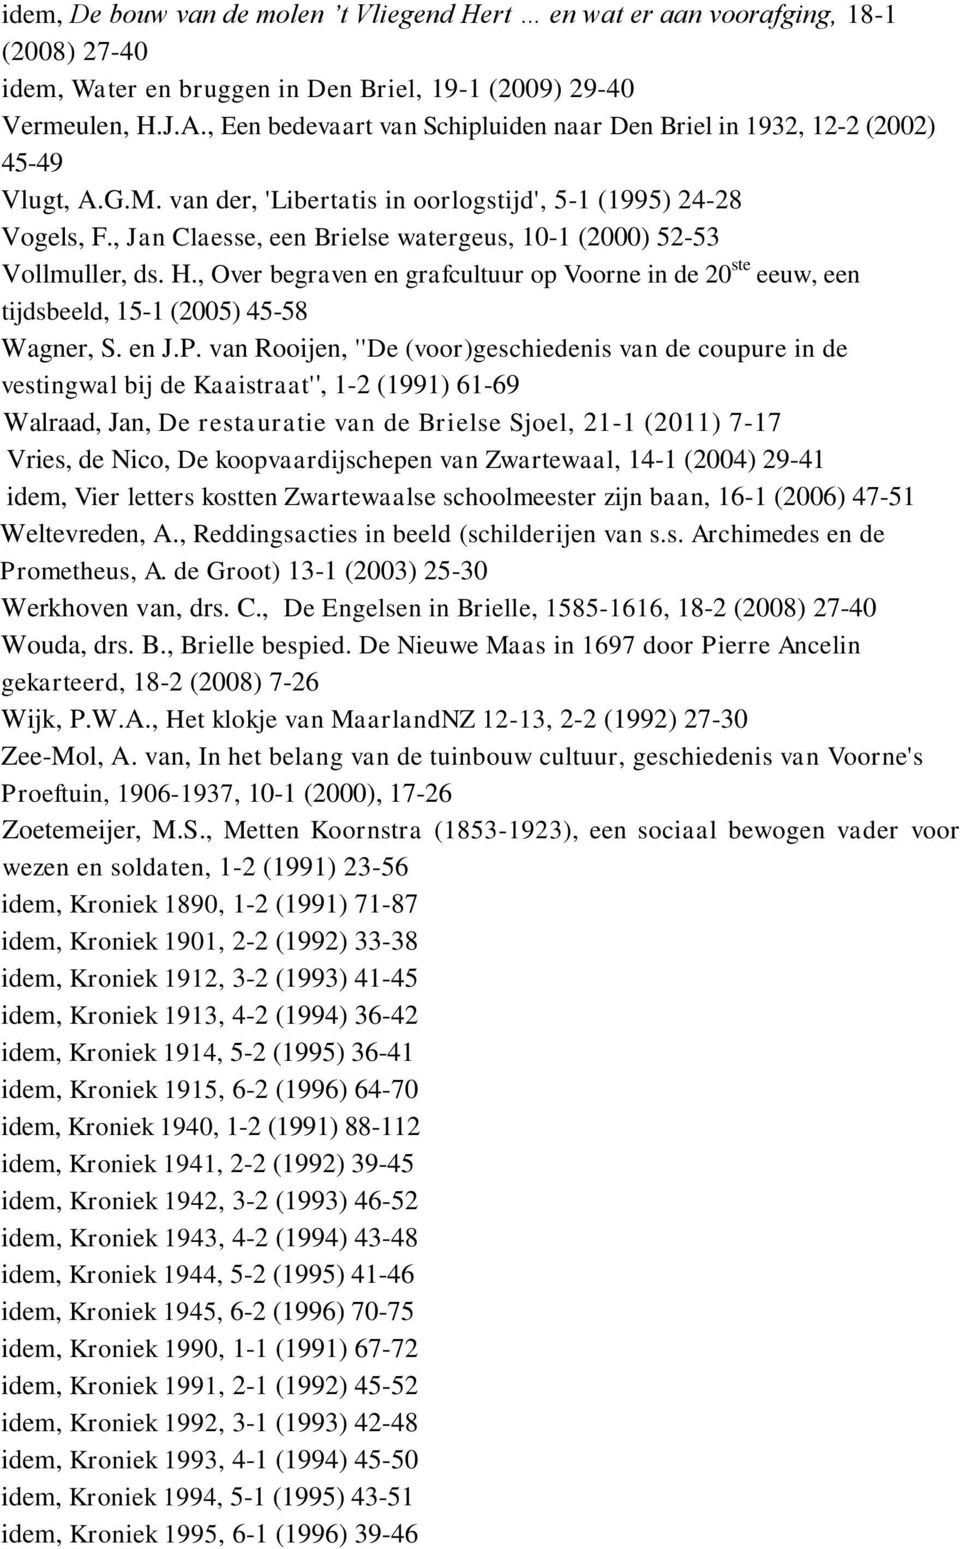 , Jan Claesse, een Brielse watergeus, 10-1 (2000) 52-53 Vollmuller, ds. H., Over begraven en grafcultuur op Voorne in de 20 ste eeuw, een tijdsbeeld, 15-1 (2005) 45-58 Wagner, S. en J.P.